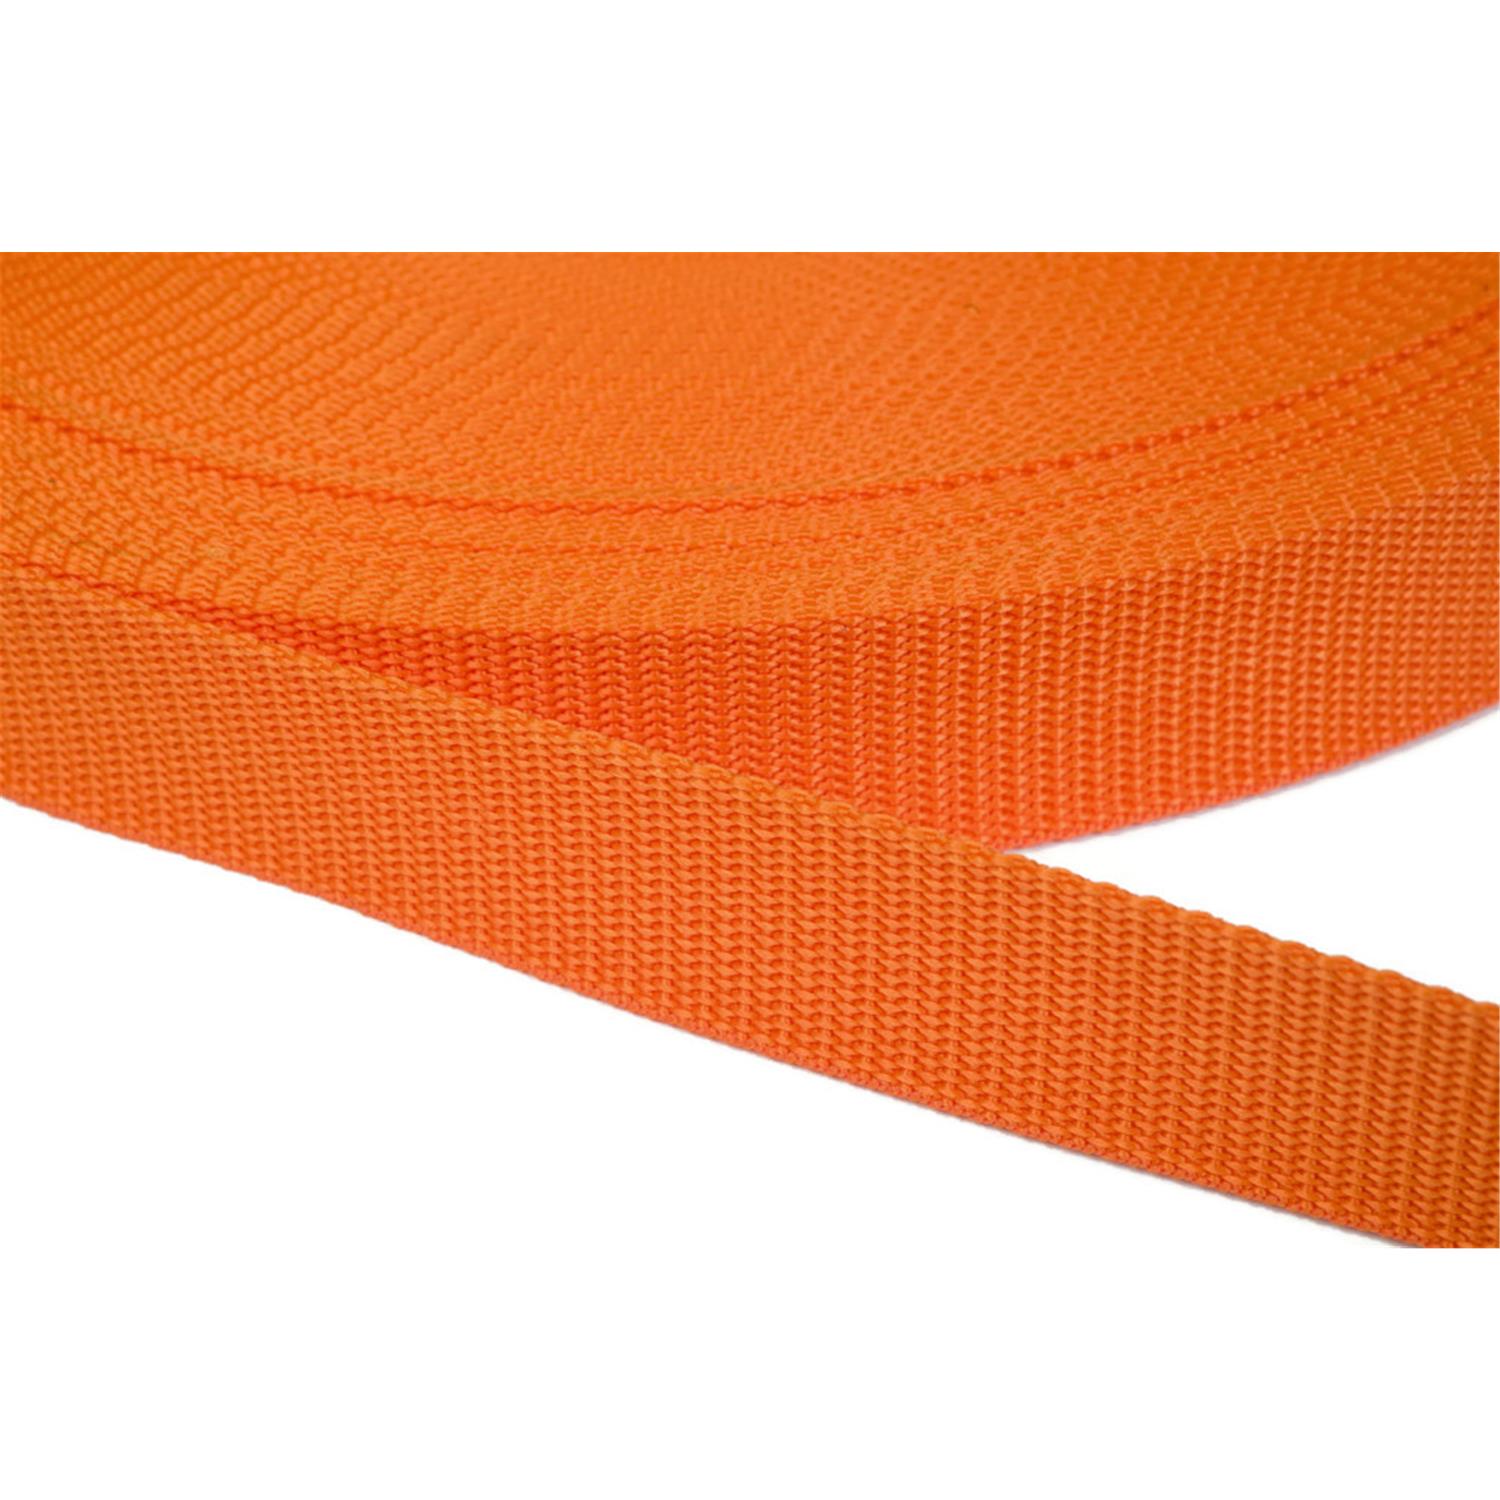 Gurtband 30mm breit aus Polypropylen in 41 Farben 11 - orange 6 Meter